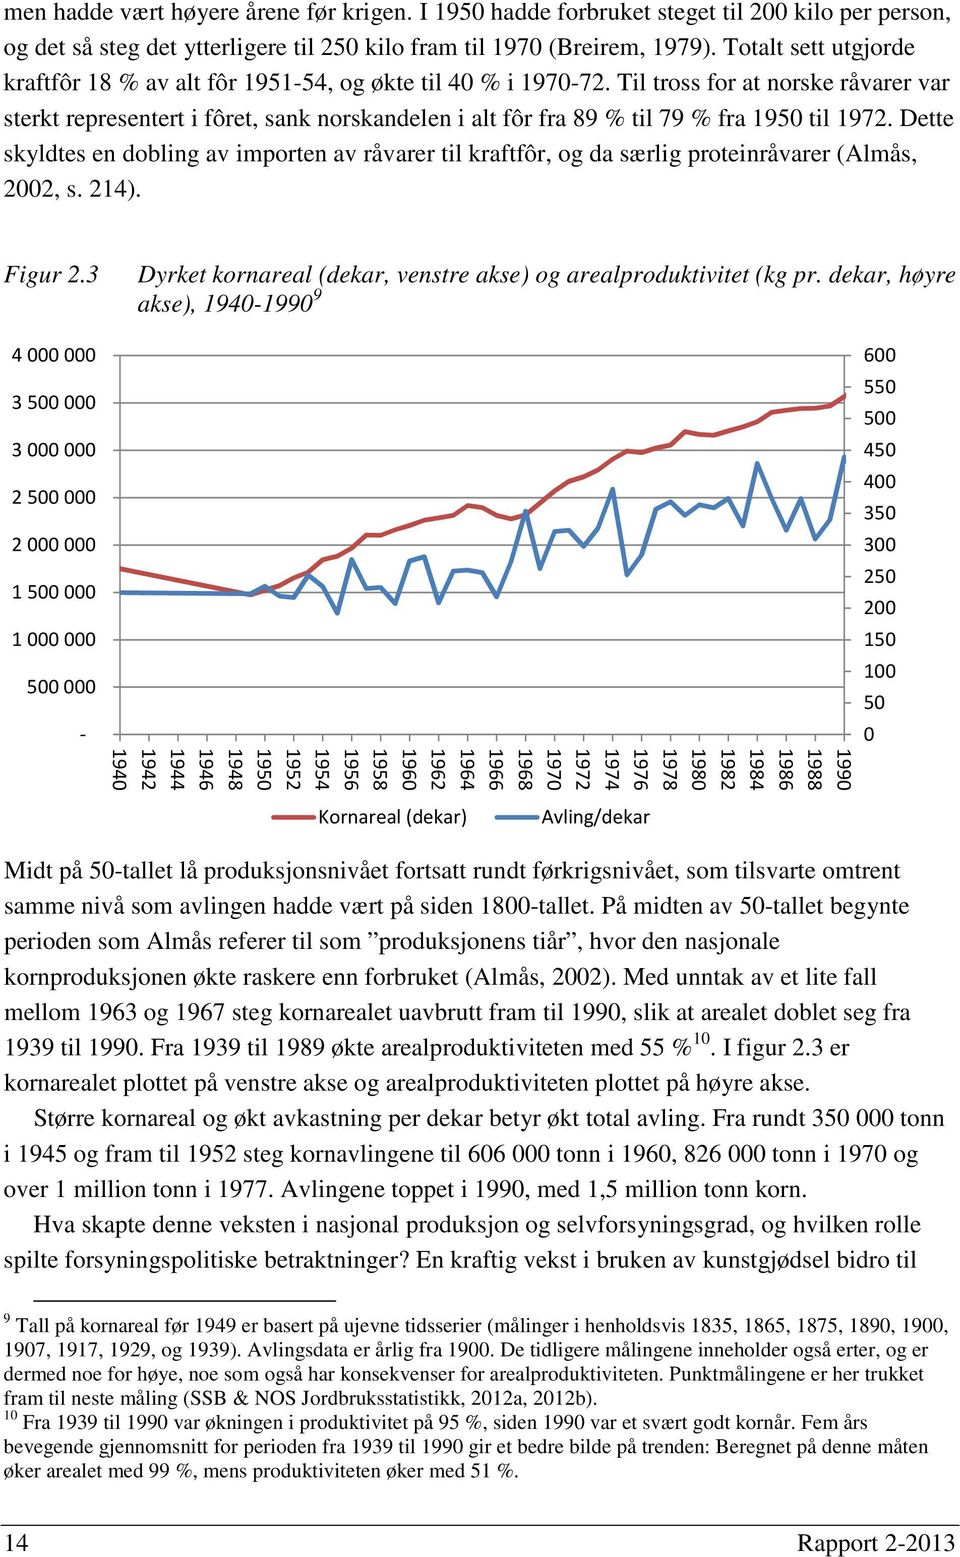 Til tross for at norske råvarer var sterkt representert i fôret, sank norskandelen i alt fôr fra 89 % til 79 % fra 1950 til 1972.